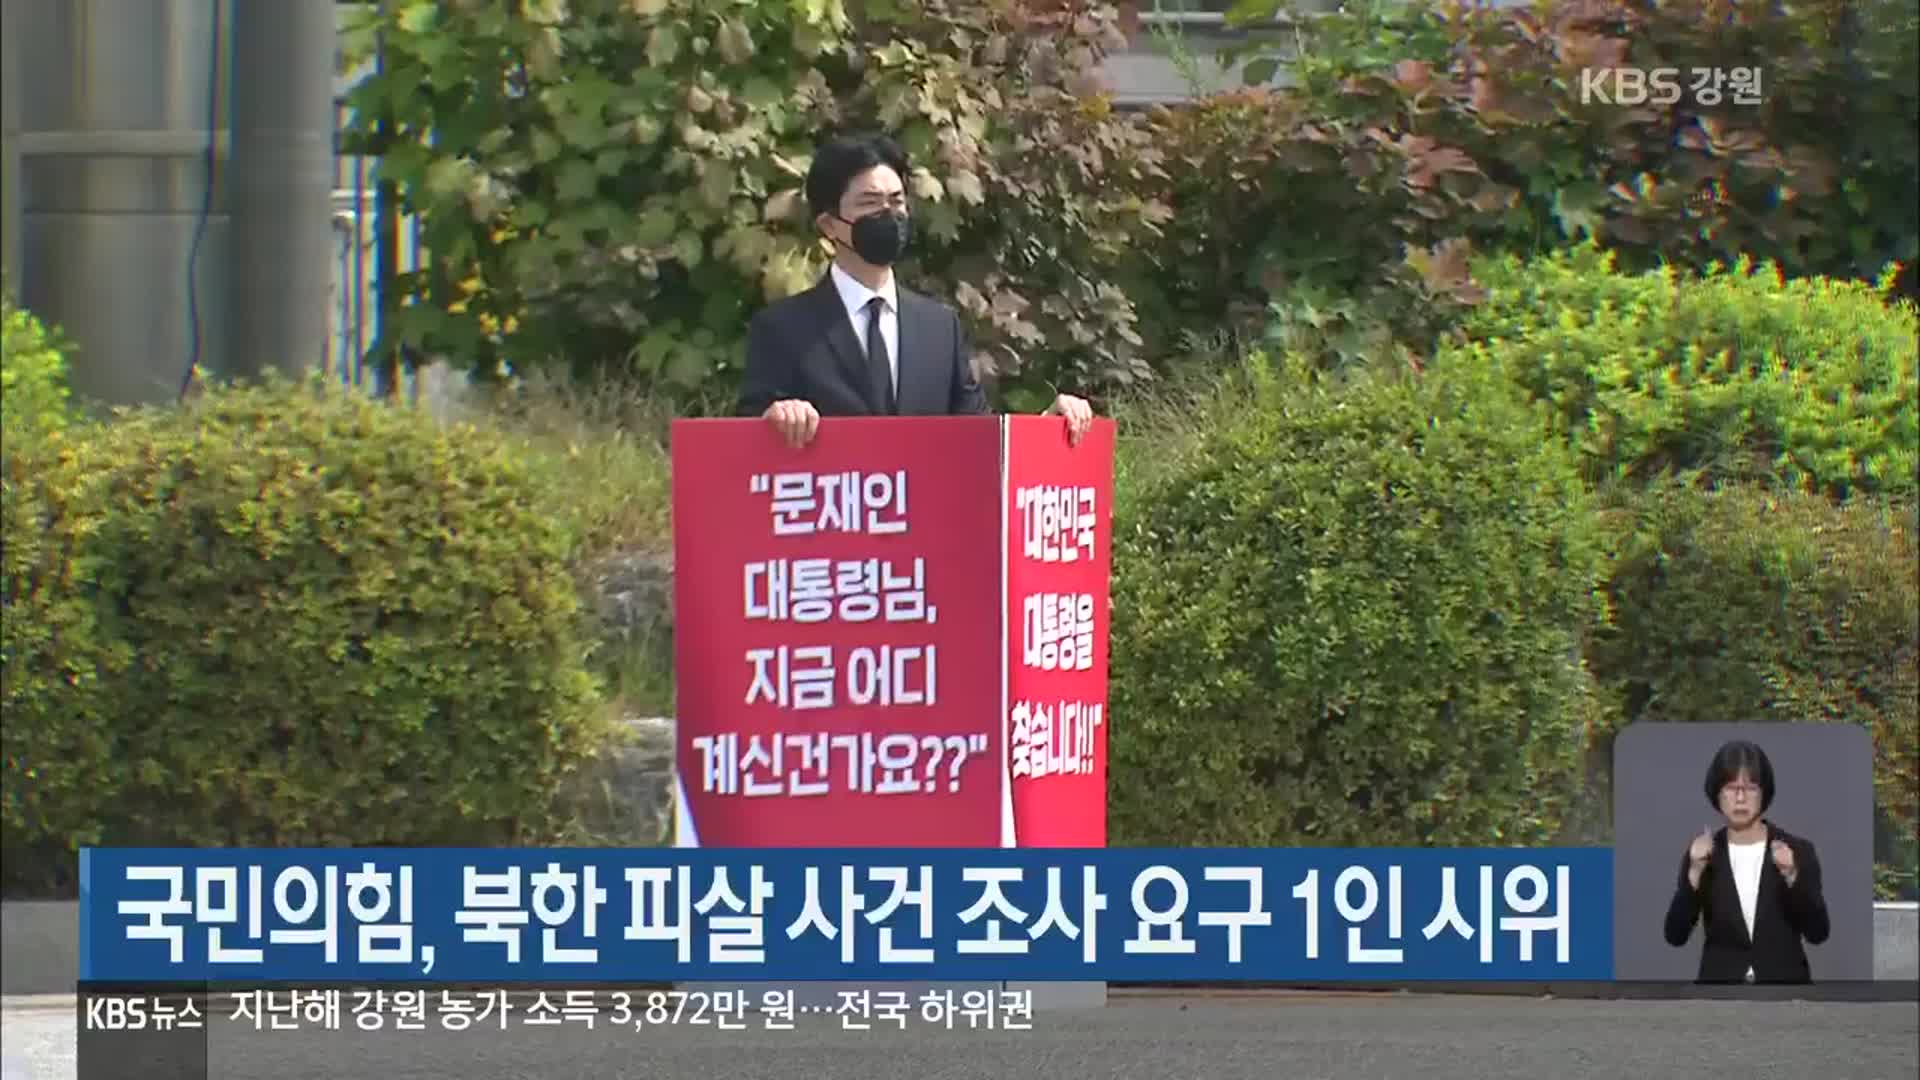 국민의힘, 북한 피살 사건 조사 요구 1인 시위